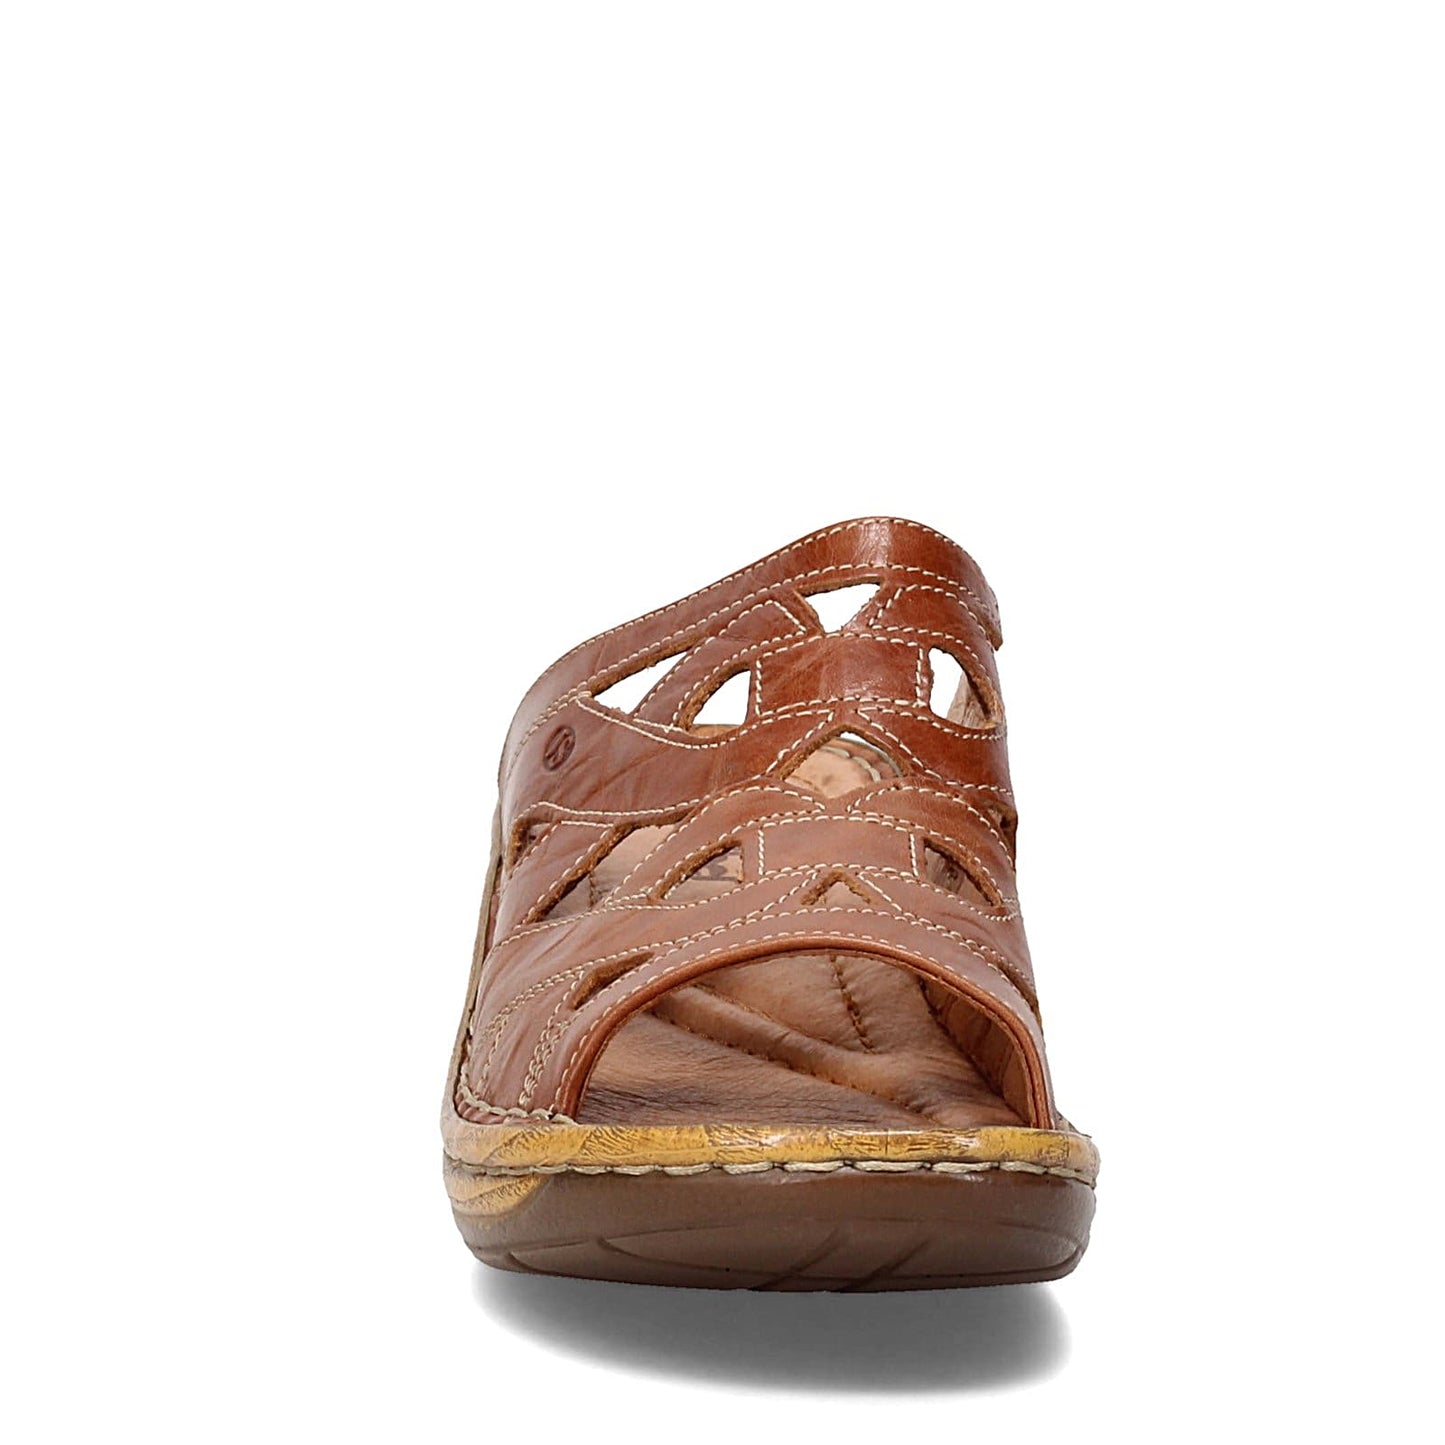 Peltz Shoes  Women's Josef Seibel Catalonia 44 Mid Heel Sandals